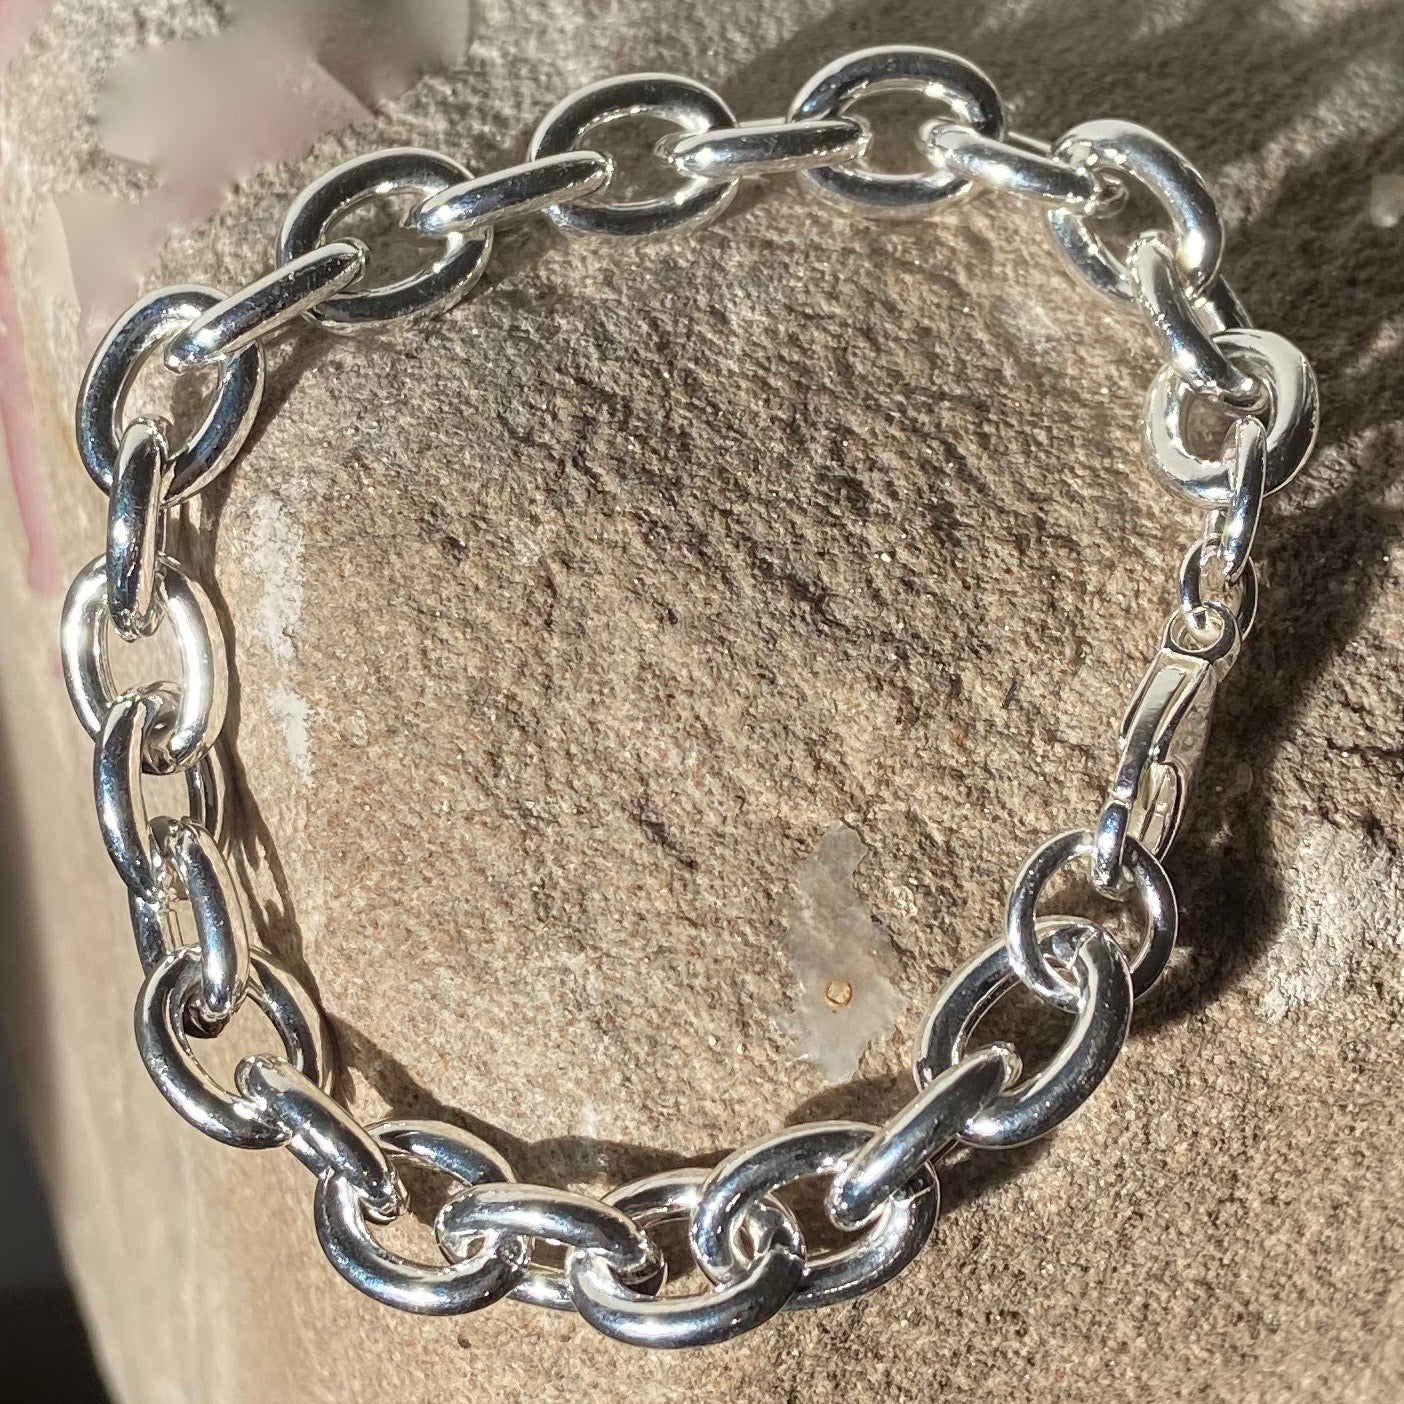 Solid Silver Link Bracelet - The Nancy Smillie Shop - Art, Jewellery & Designer Gifts Glasgow